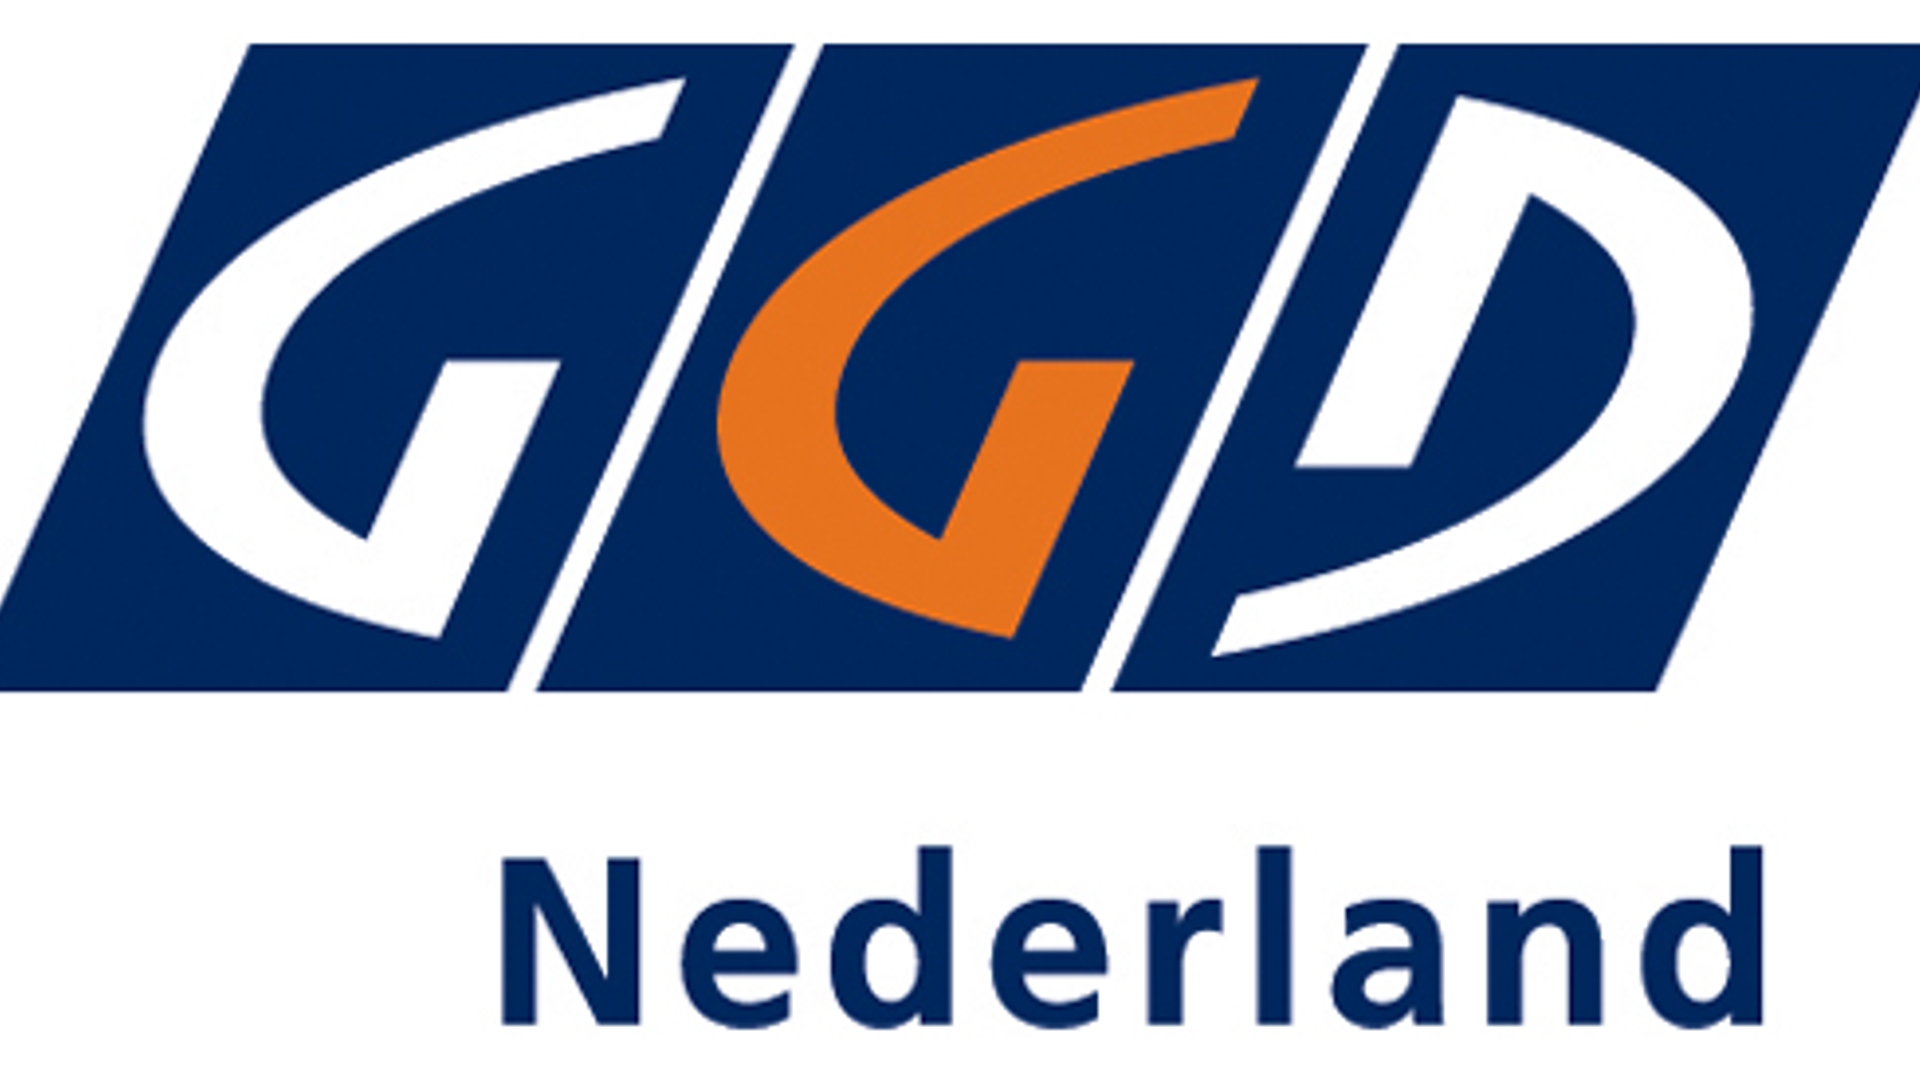 GGD_Nederland.jpg